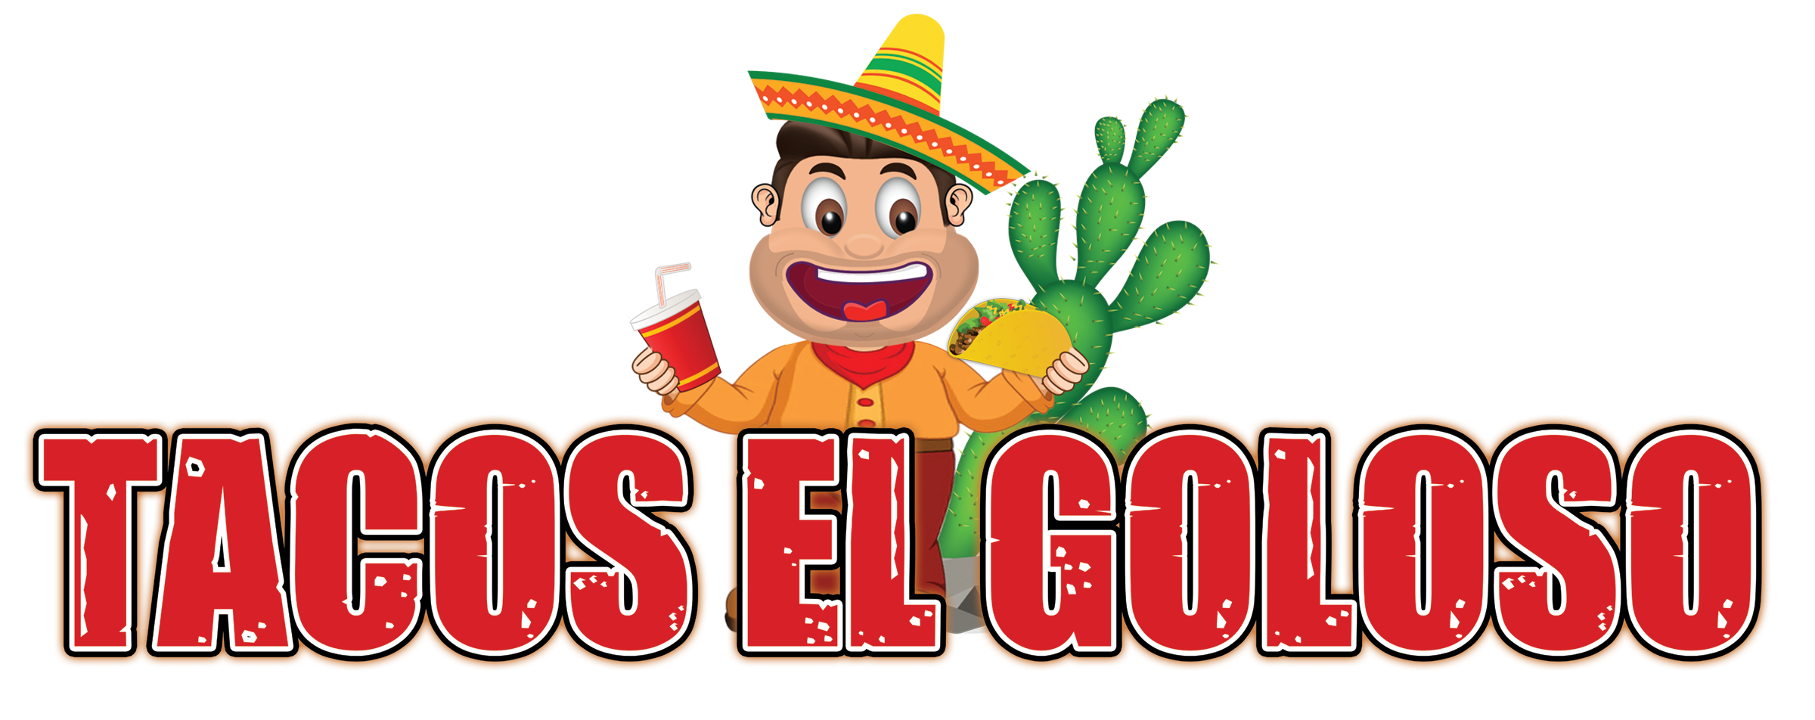 Tacos El Goloso Torrance 3720 Pacific Coast Highway. Suite 101